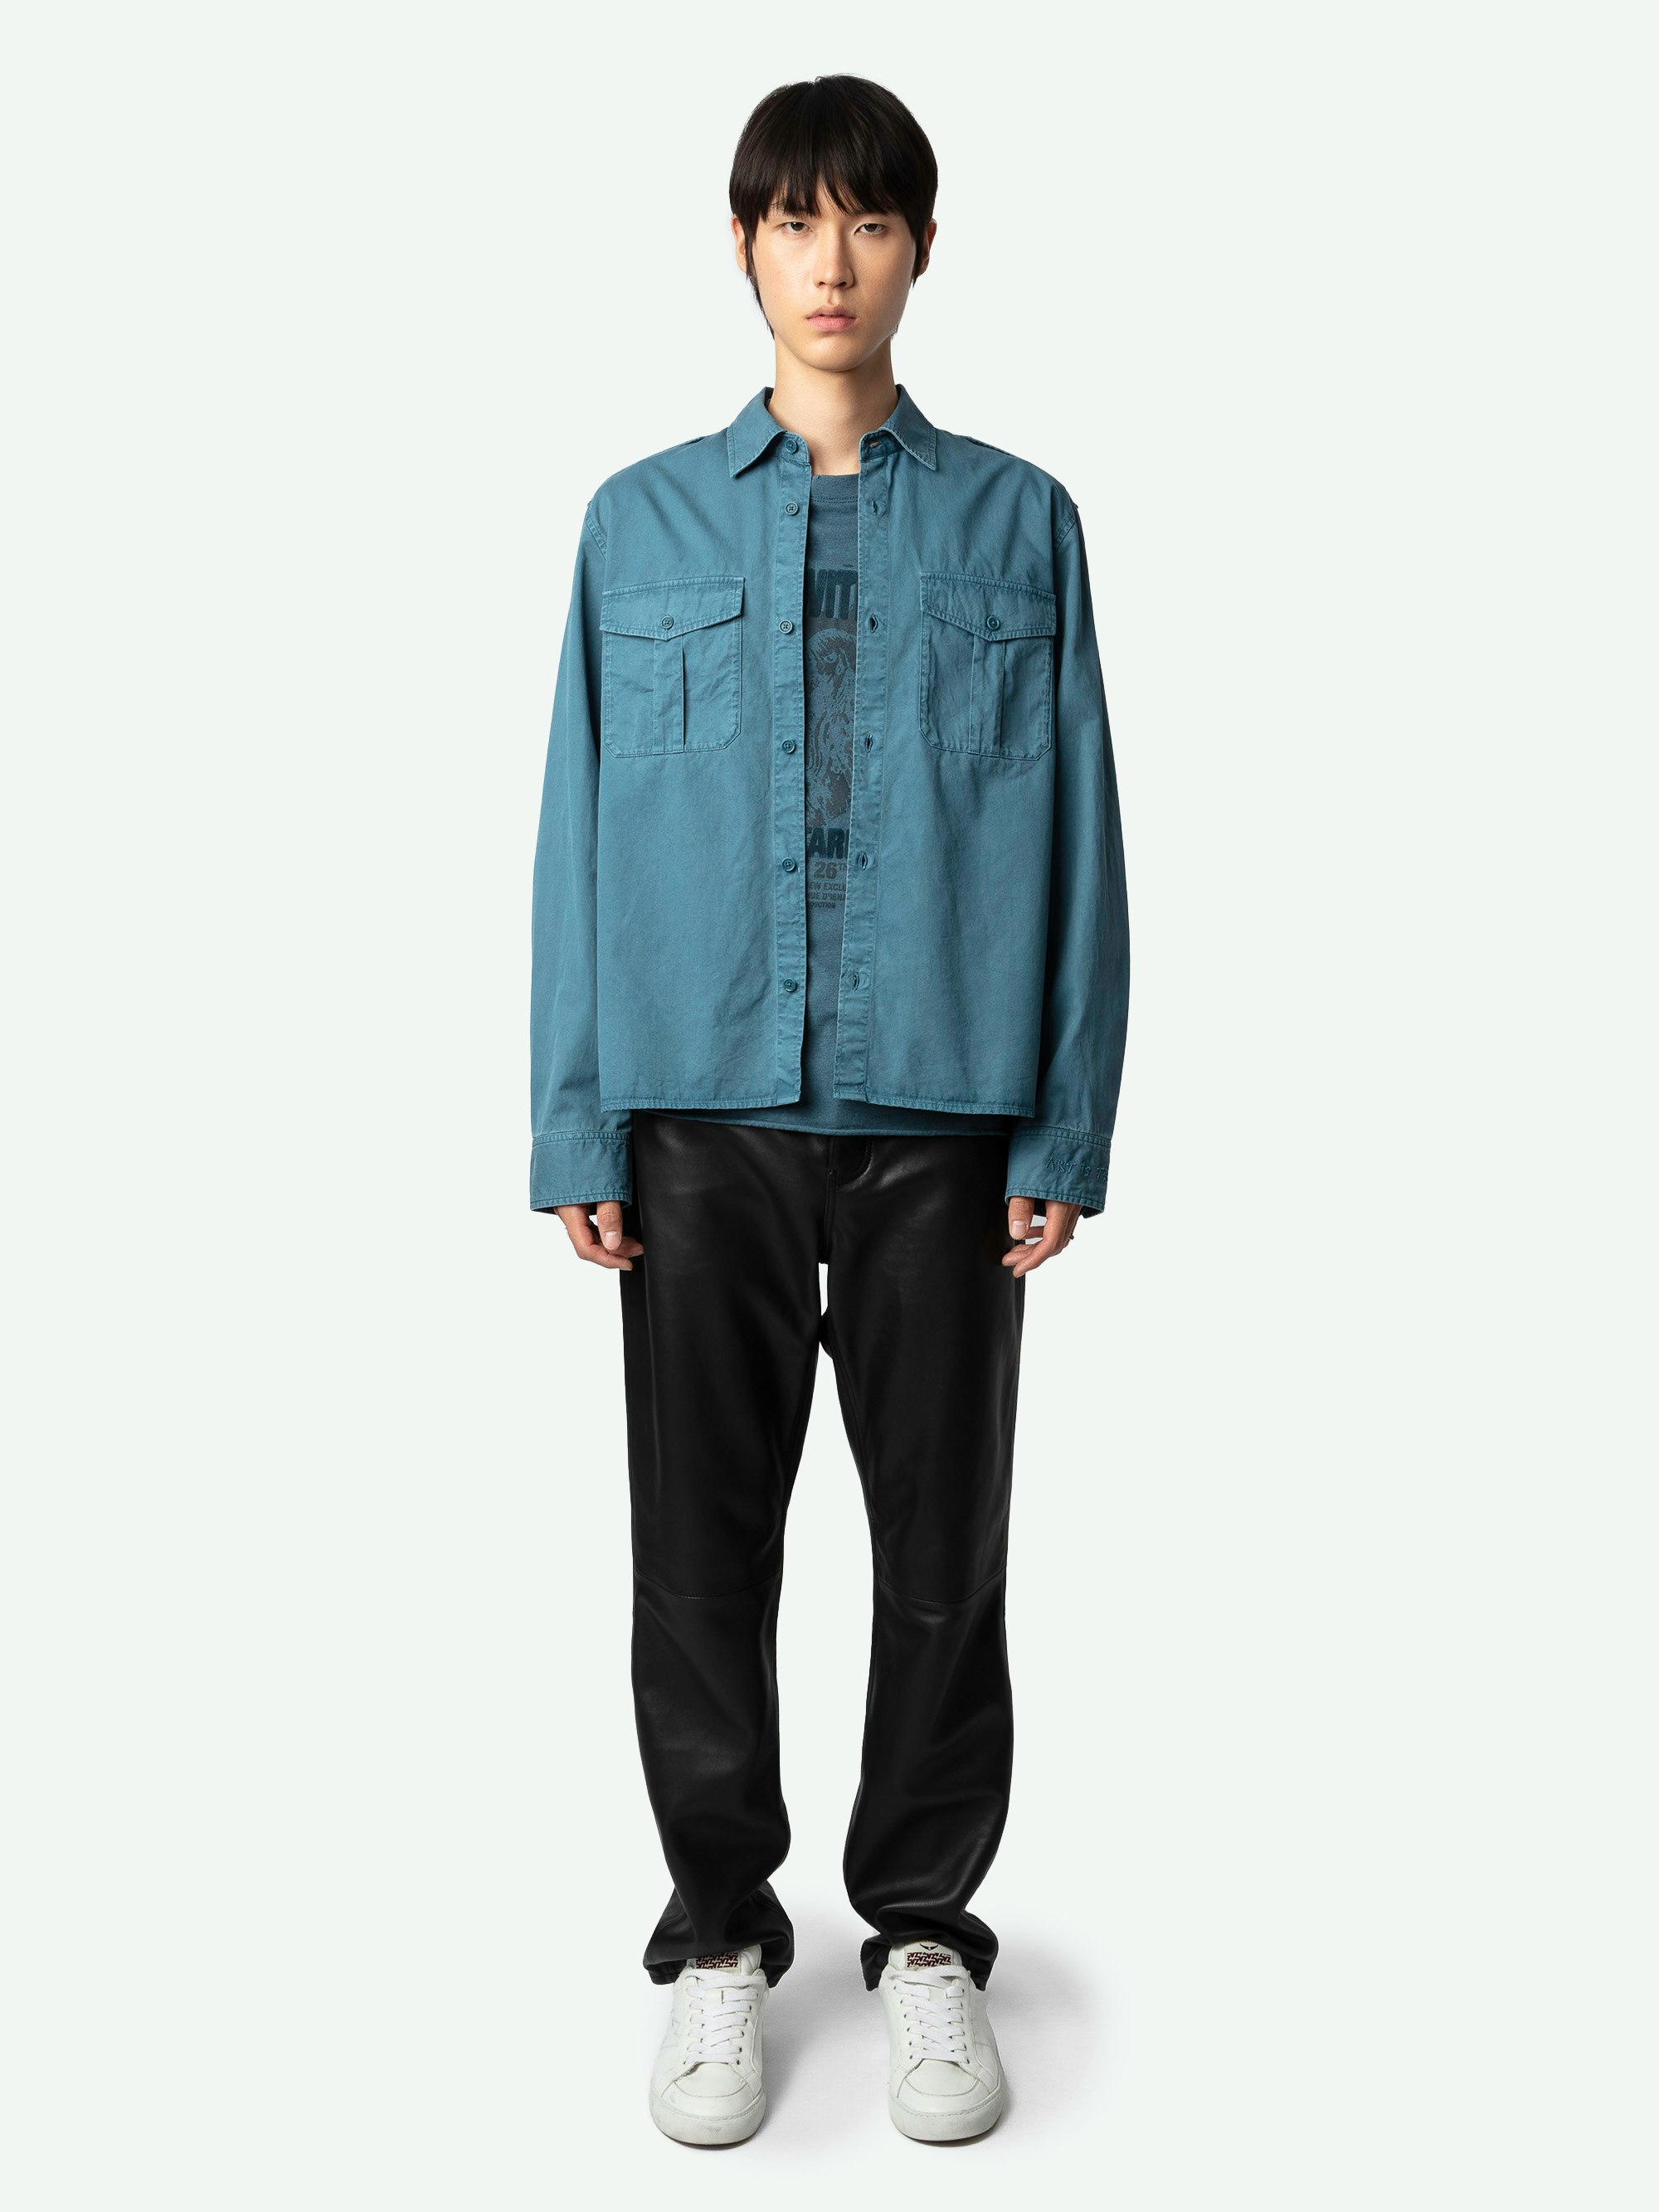 Camisa Taskal - Camisa militar de algodón ecológico de color azul, de manga larga, con trabillas en los hombros y bordado "Art Is Truth" en el puño.